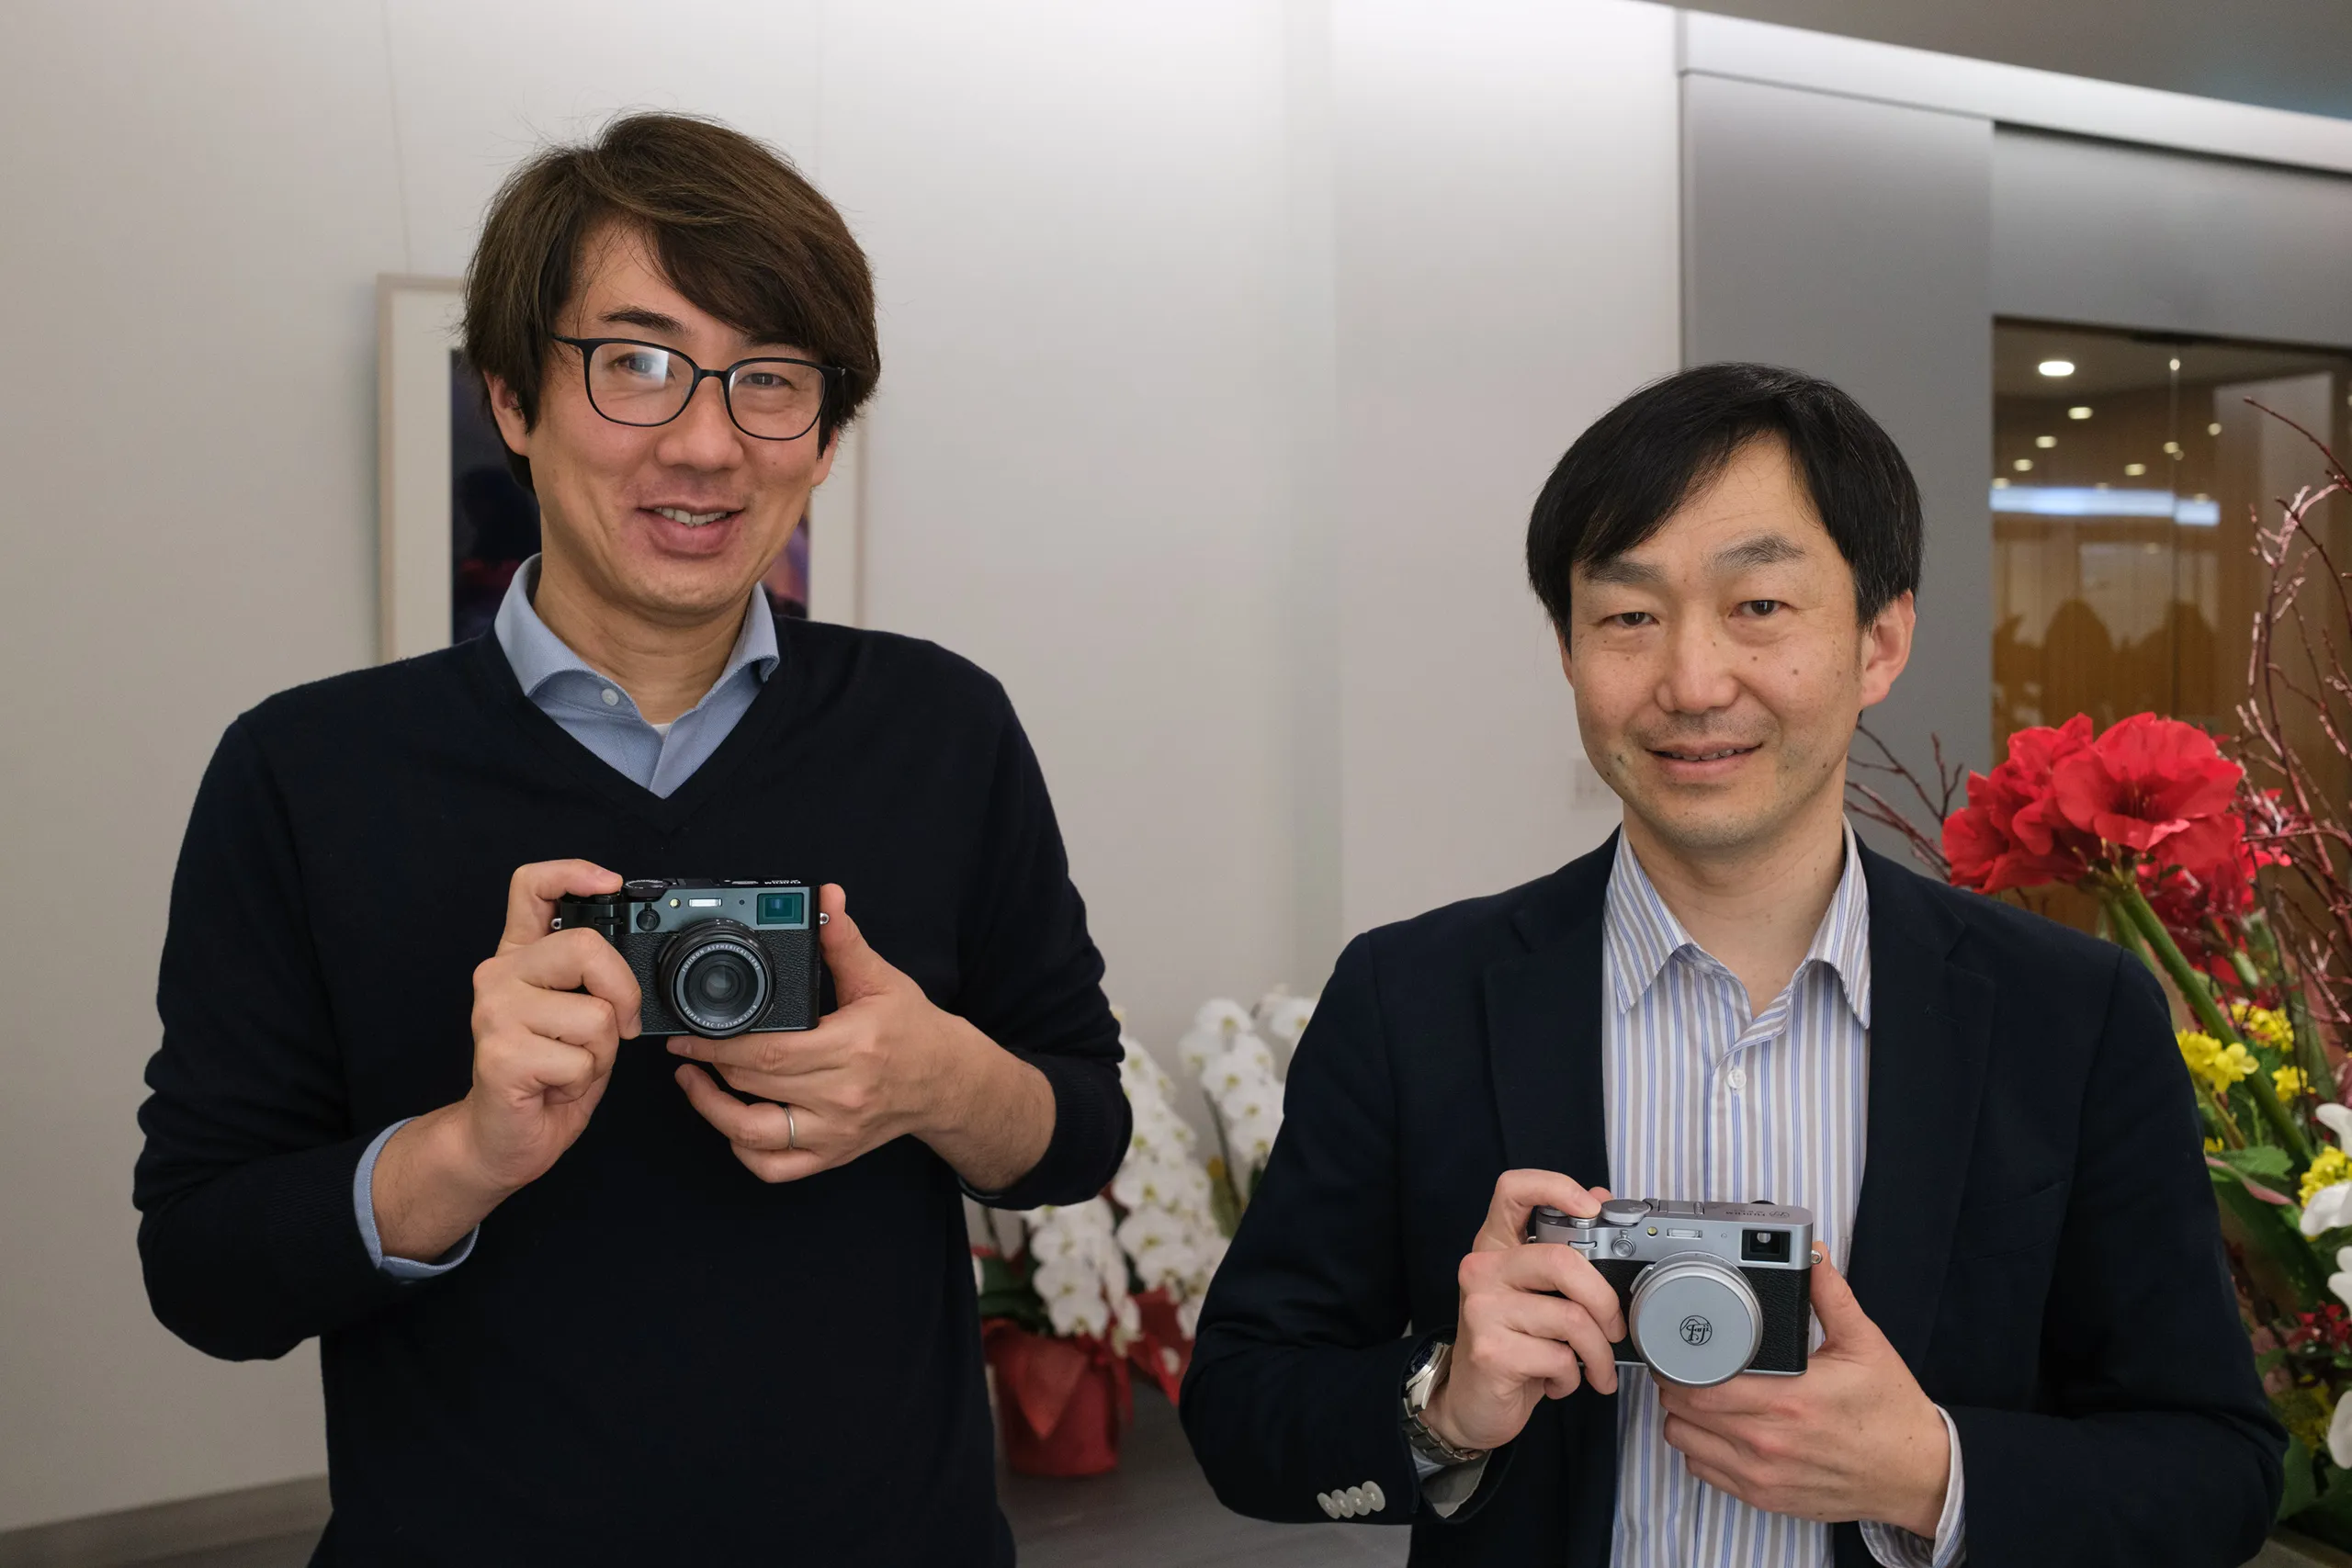 Đại diện Fujifilm chia sẻ: Fujifilm vẫn sẽ tiếp tục phát triển dòng máy ảnh X-Pro trong tương lai